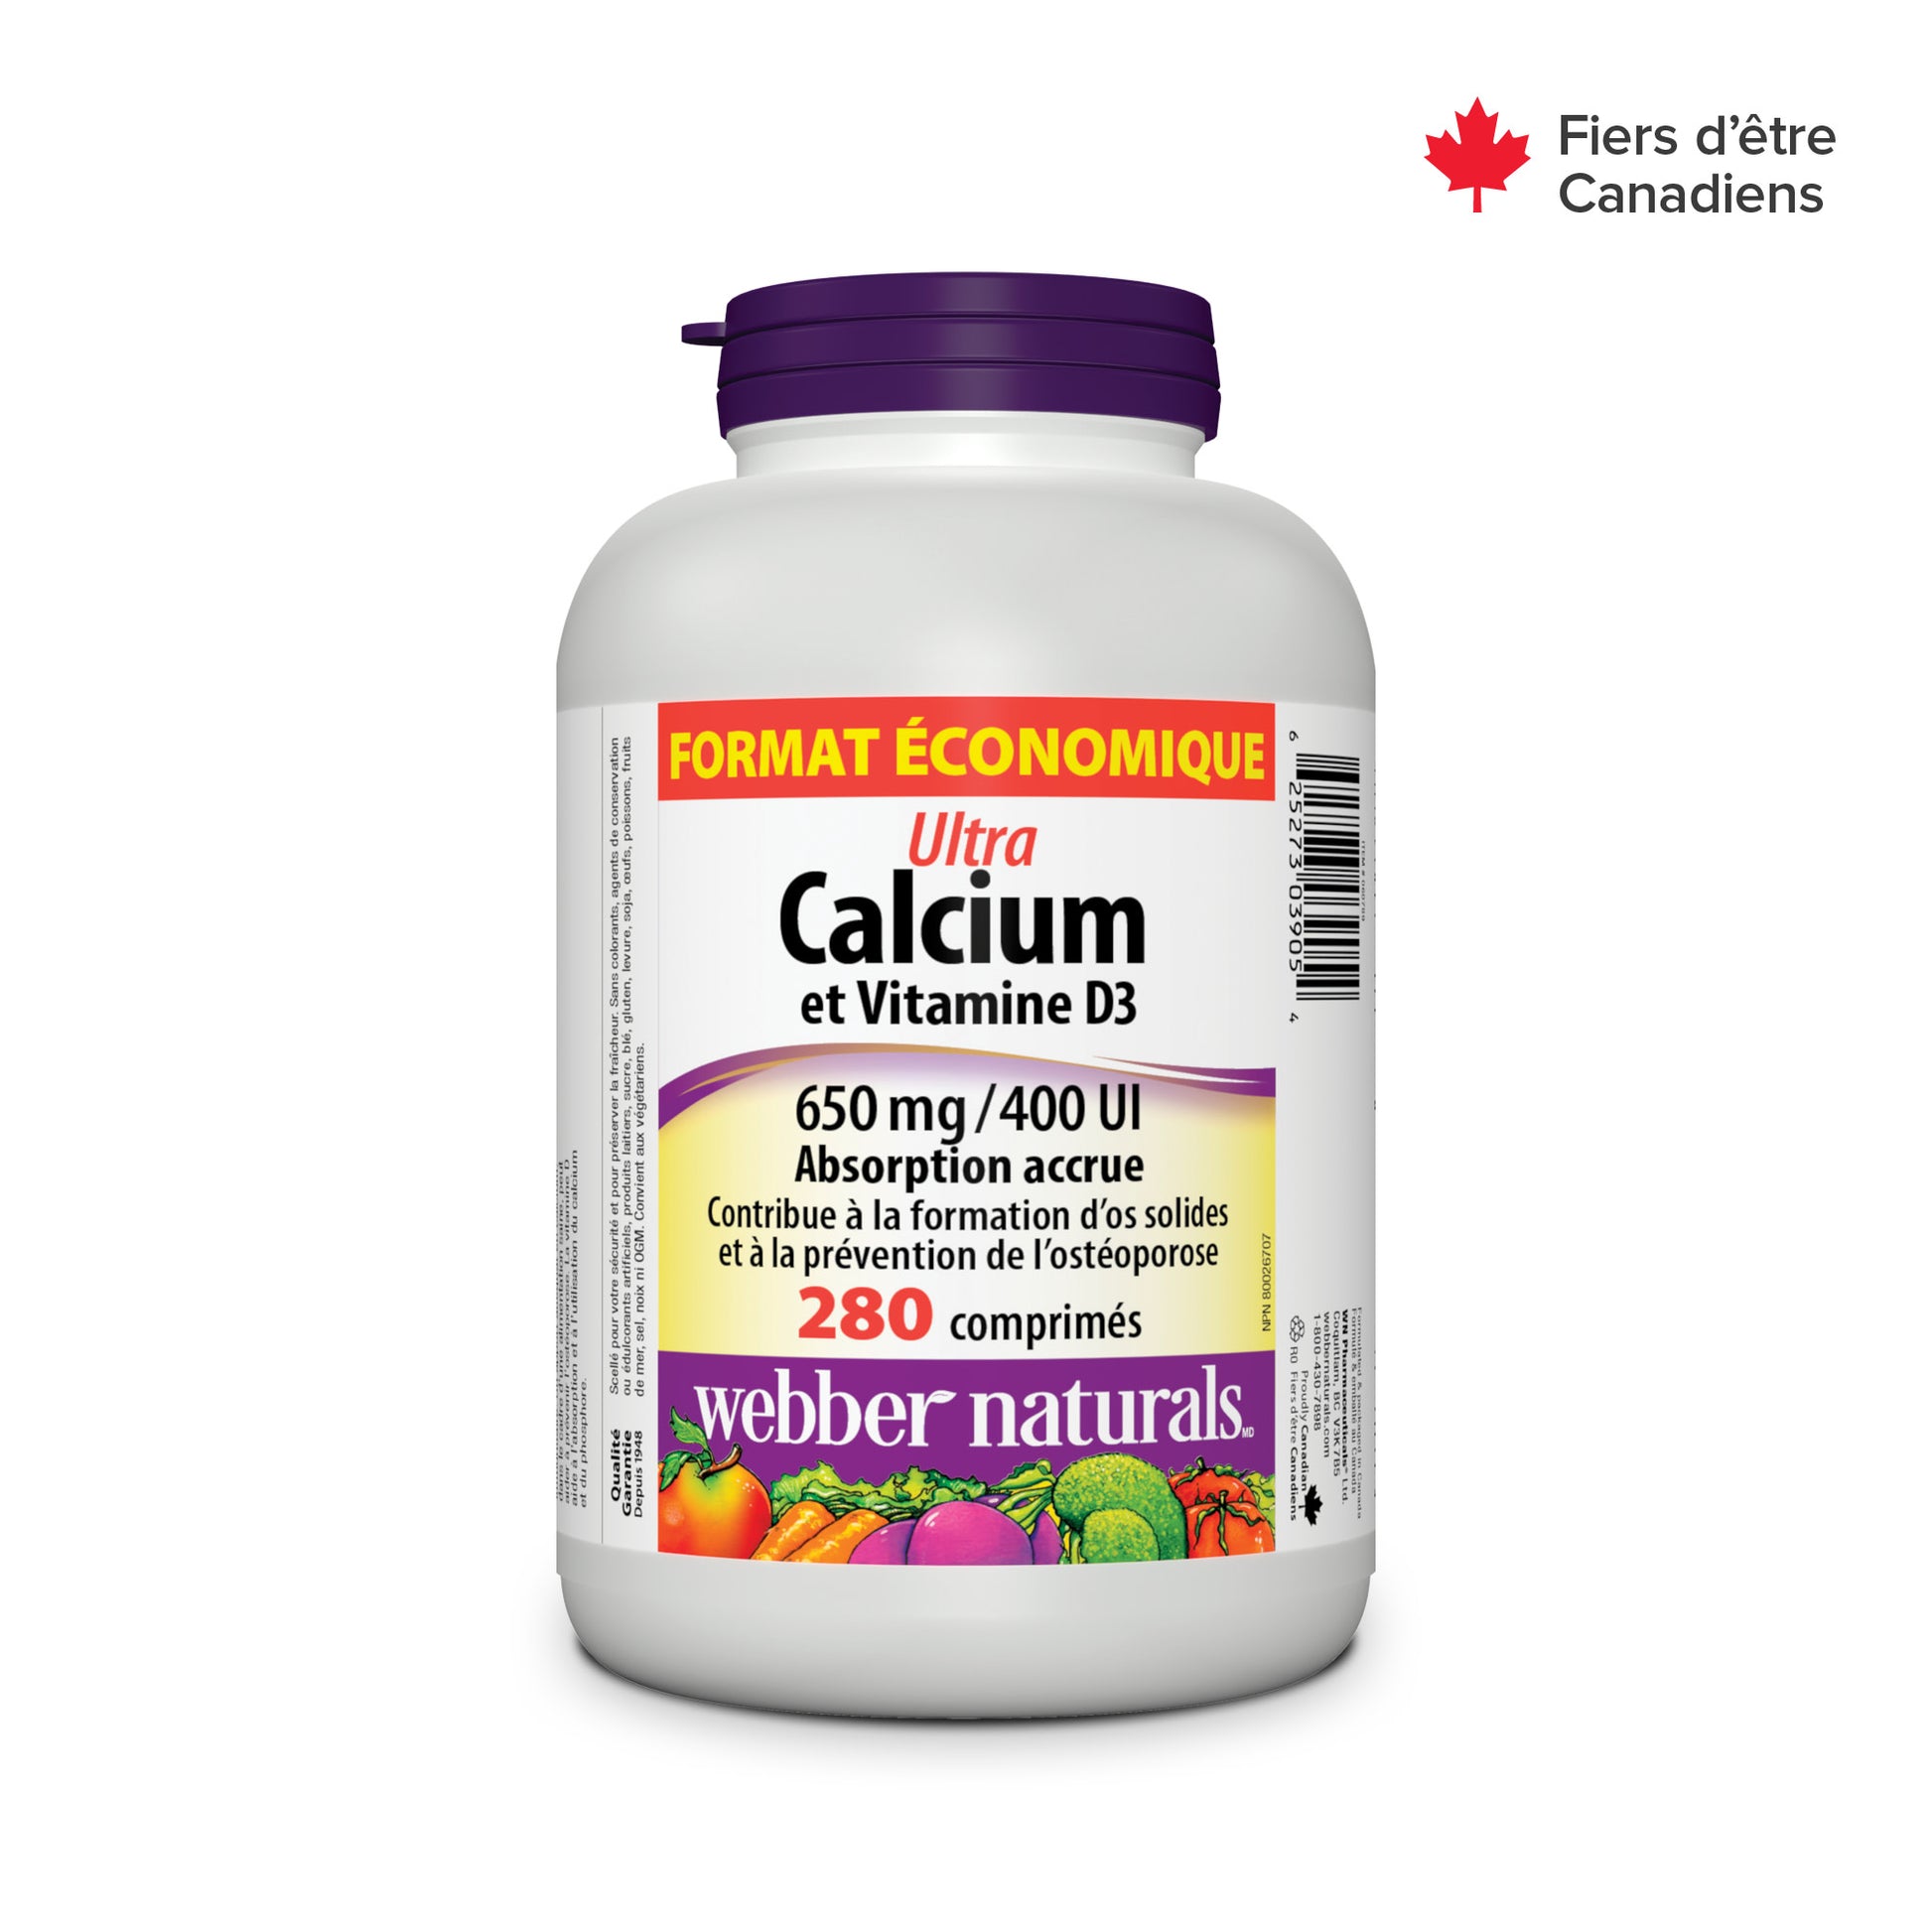 Ultra Calcium et Vitamine D3 Absorption accrue 650 mg / 400 UI  for Webber Naturals|v|hi-res|WN3905